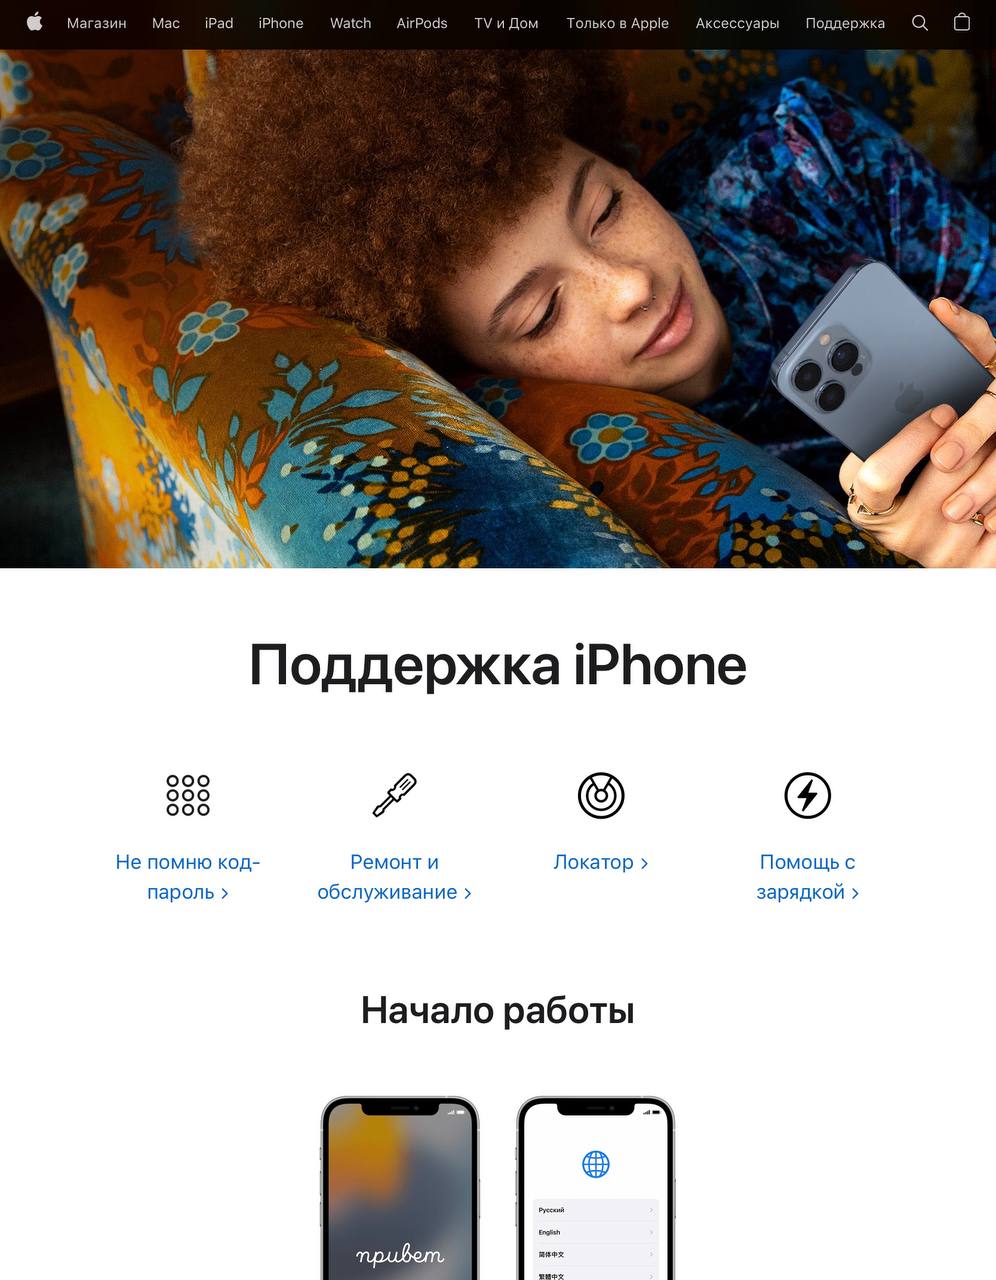 Сайт Поддержки русифицирован, но как будто «застыл» во временах iOS 15